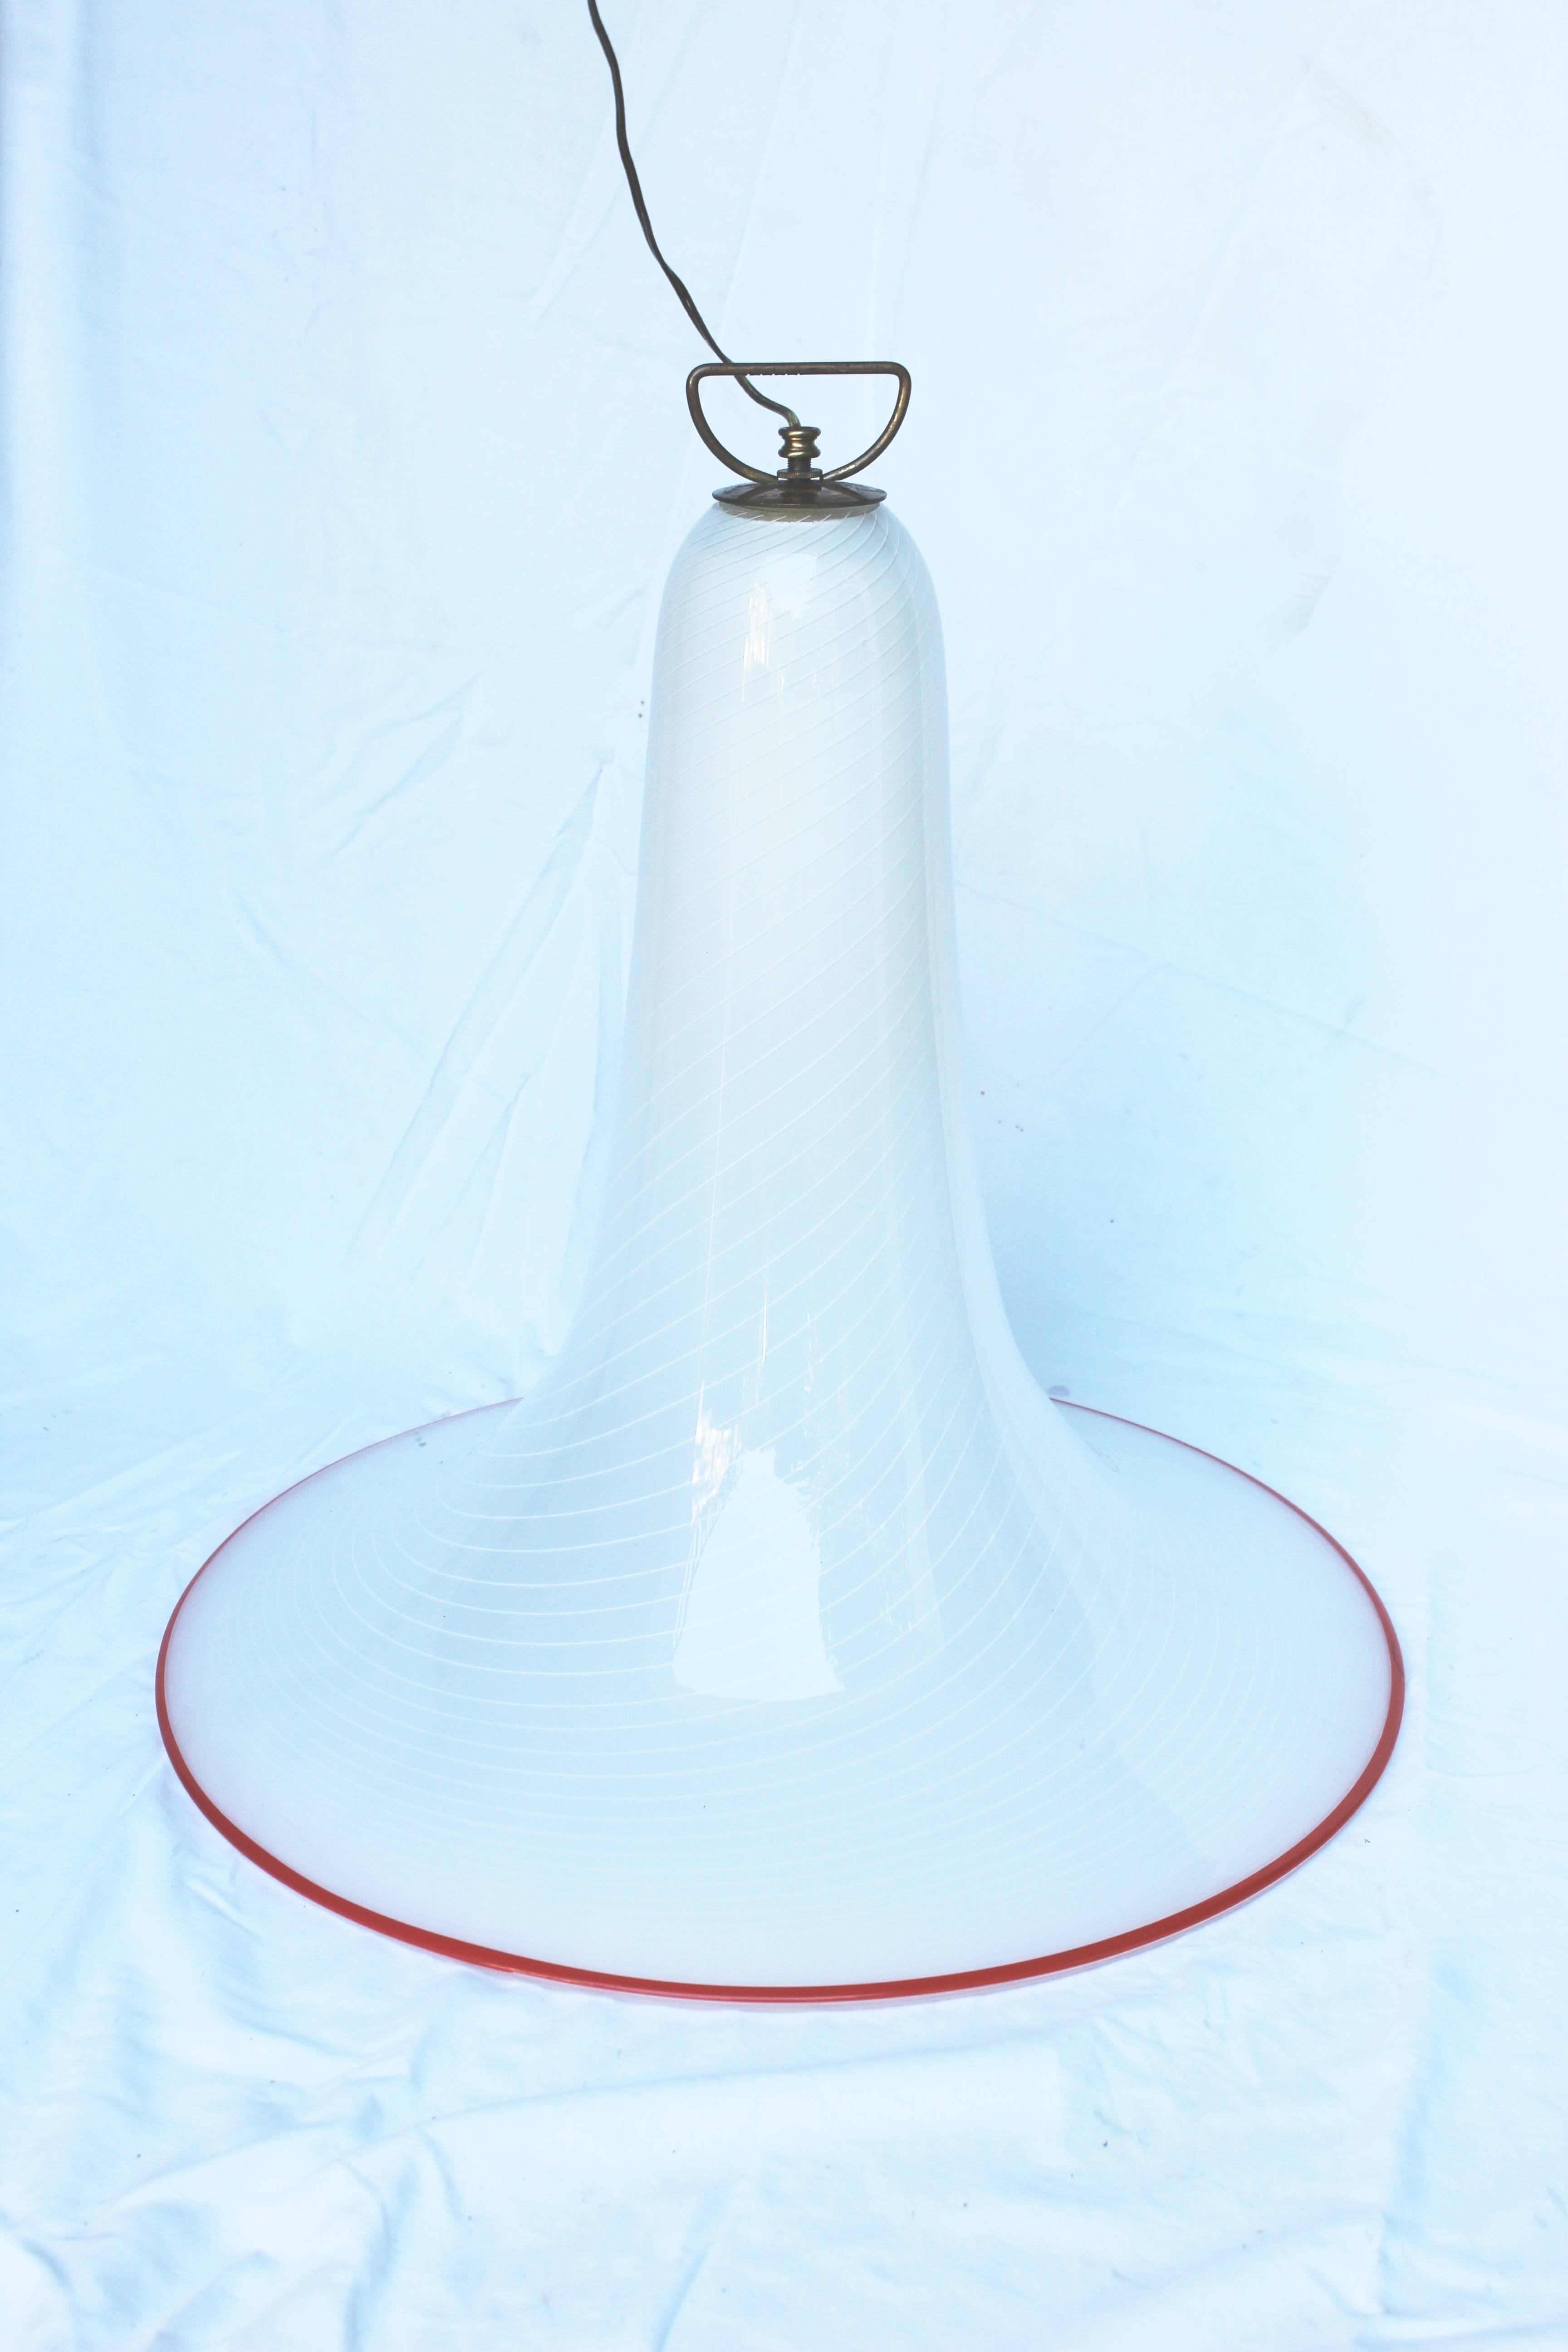 Großartig aussehender und großartiger glockenförmiger Muranoglas-Kronleuchter oder -Hängeleuchte. Weißer Wirbel mit einer roten Lippe.